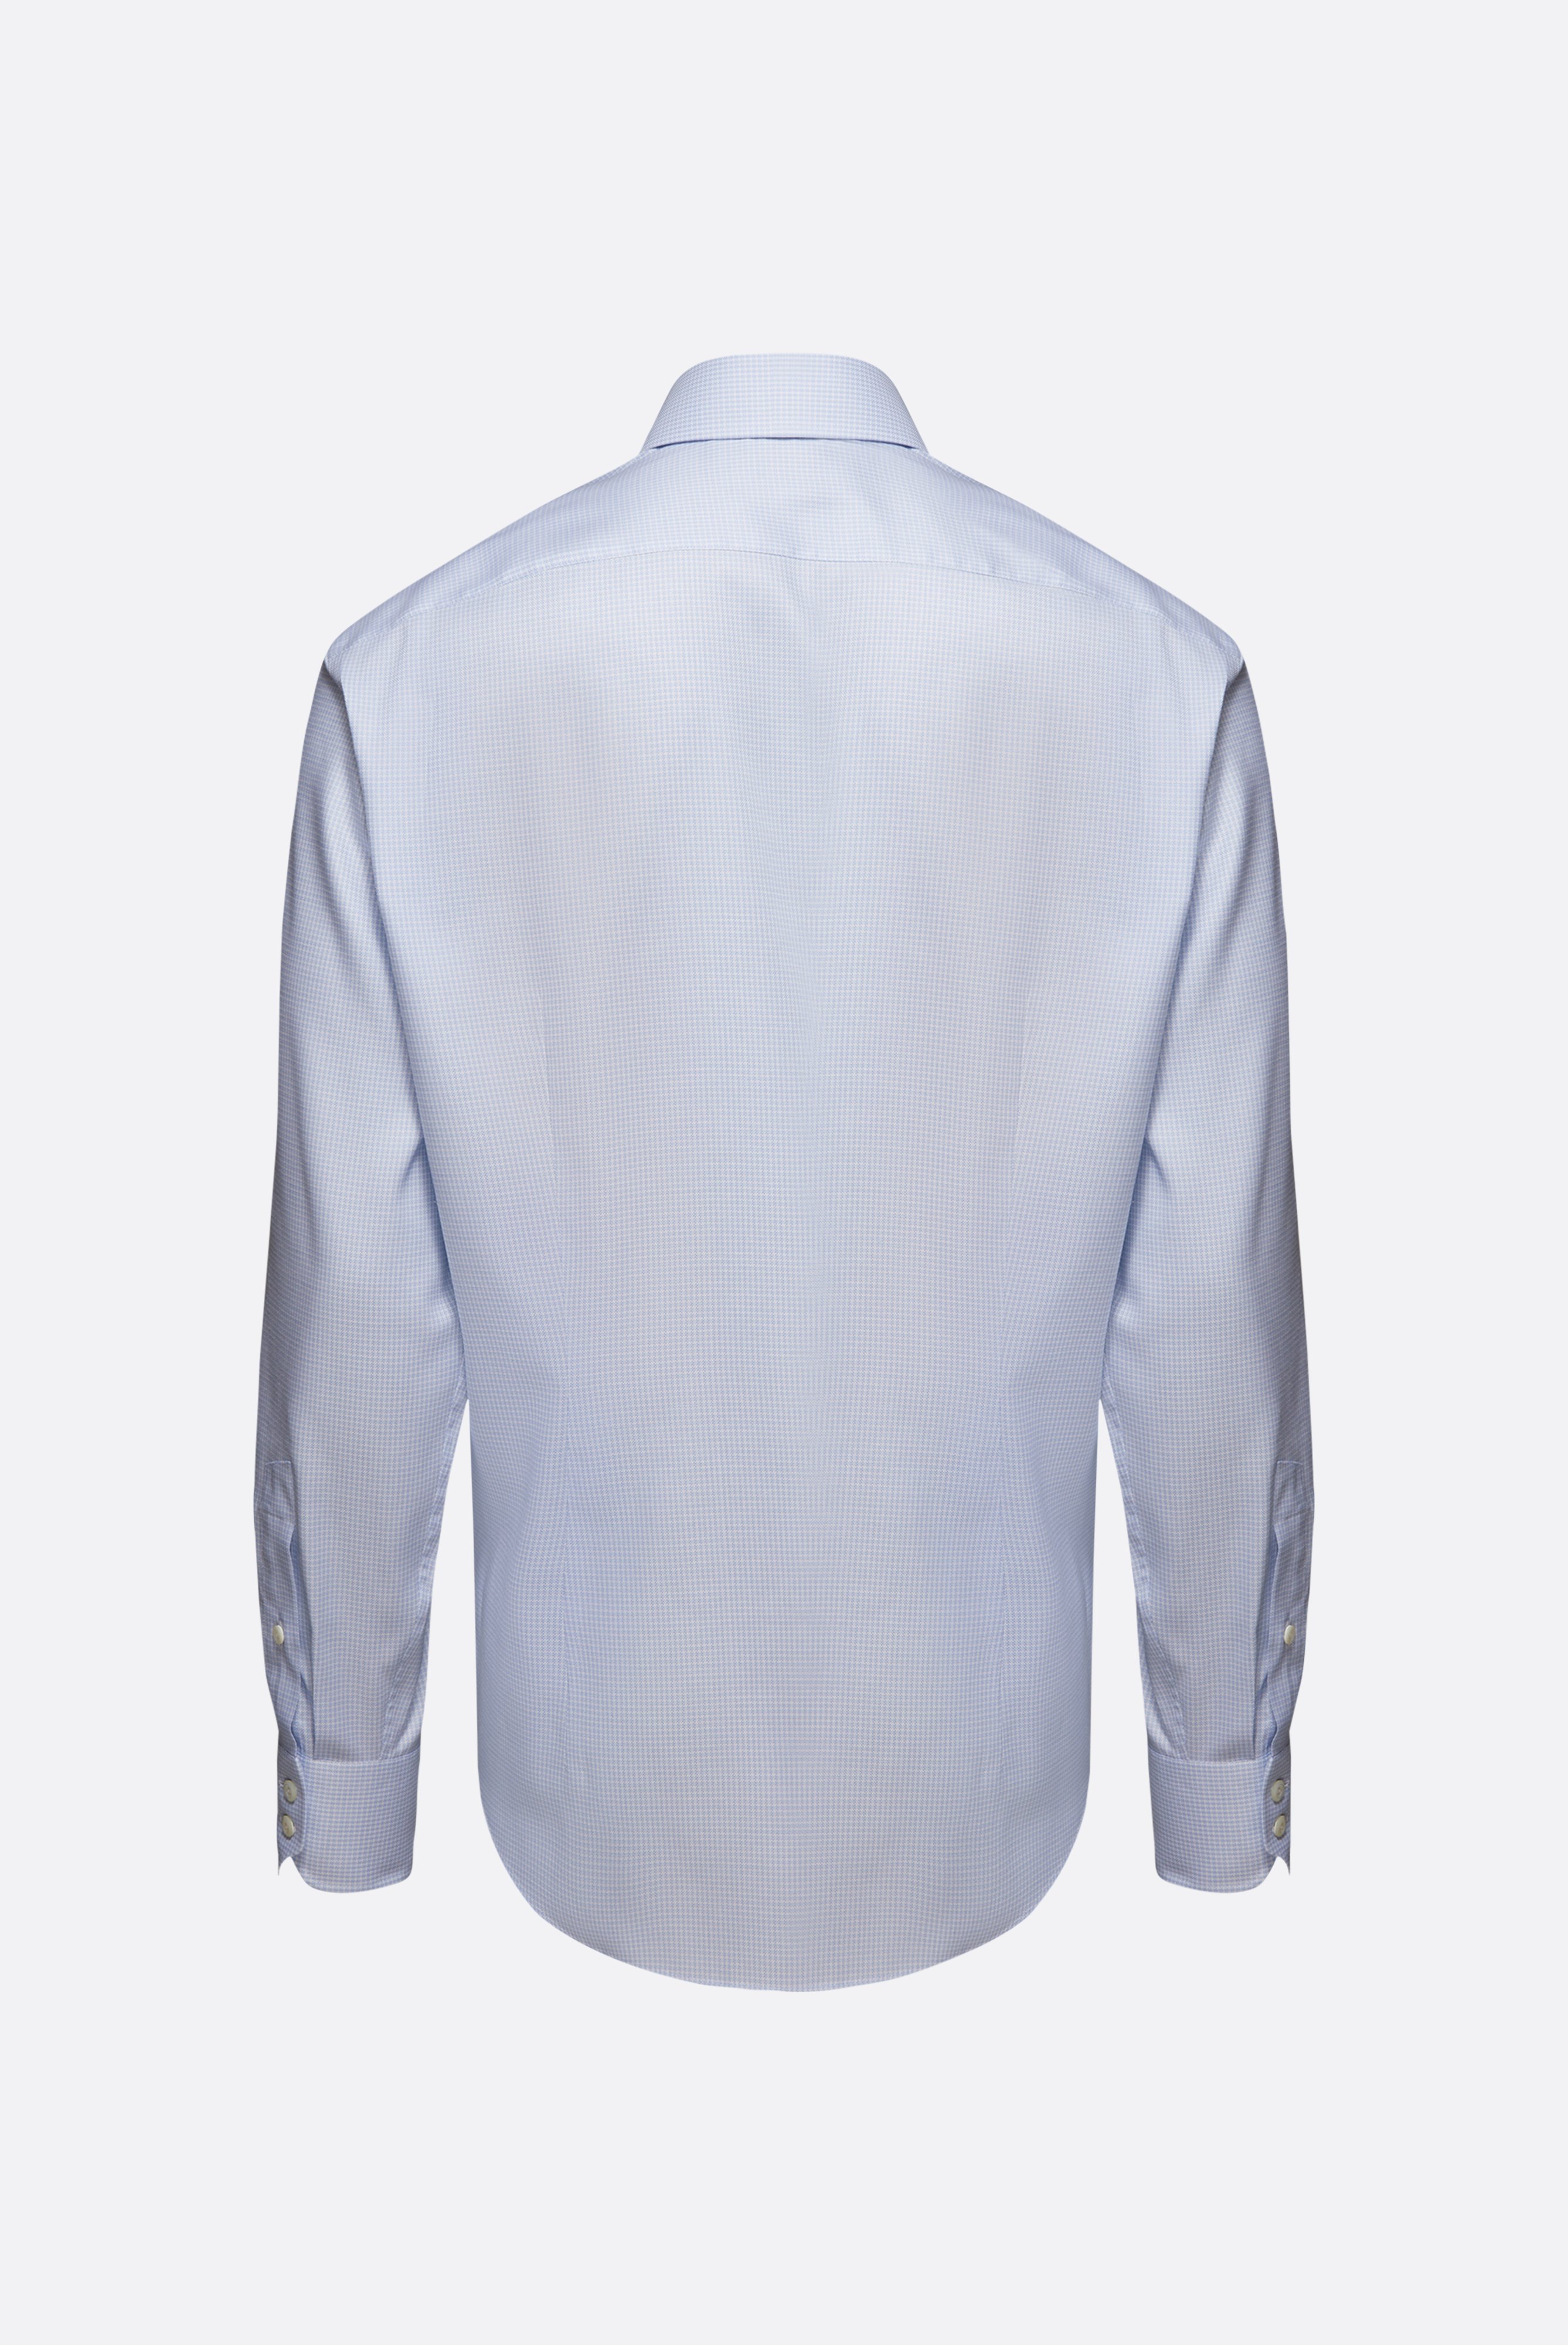 Bügelleichte Hemden+Bügelfreies Hemd mit Hahnentrittmuster Tailor Fit+20.2020.BQ.161101.720.38